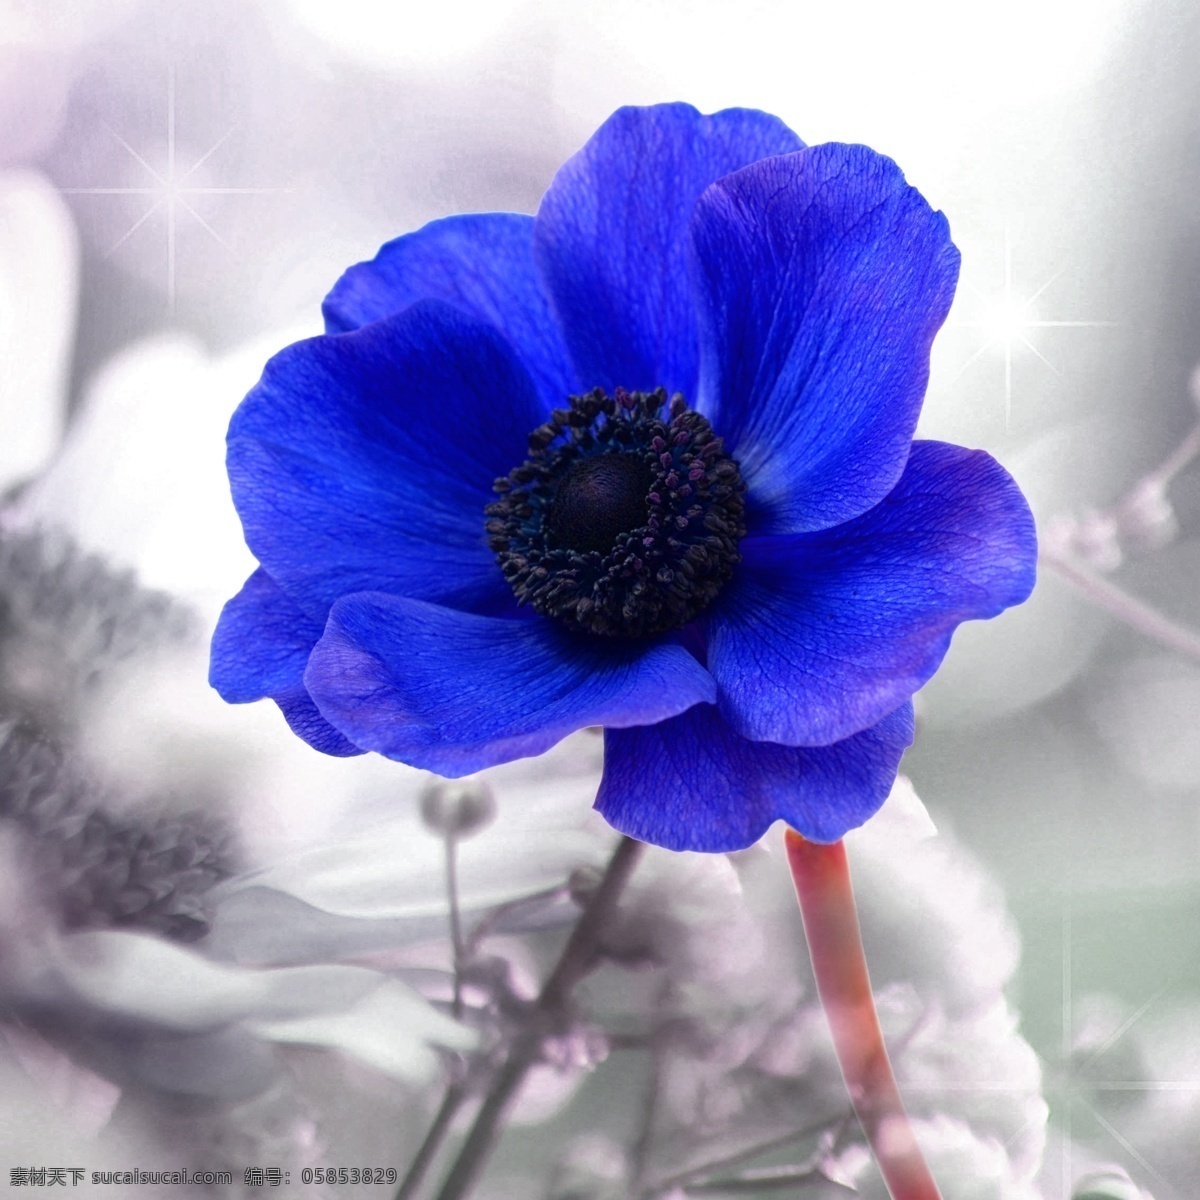 广告设计模板 花朵 花卉 蓝色花朵 无框画 源文件 装饰画 模板下载 其他海报设计